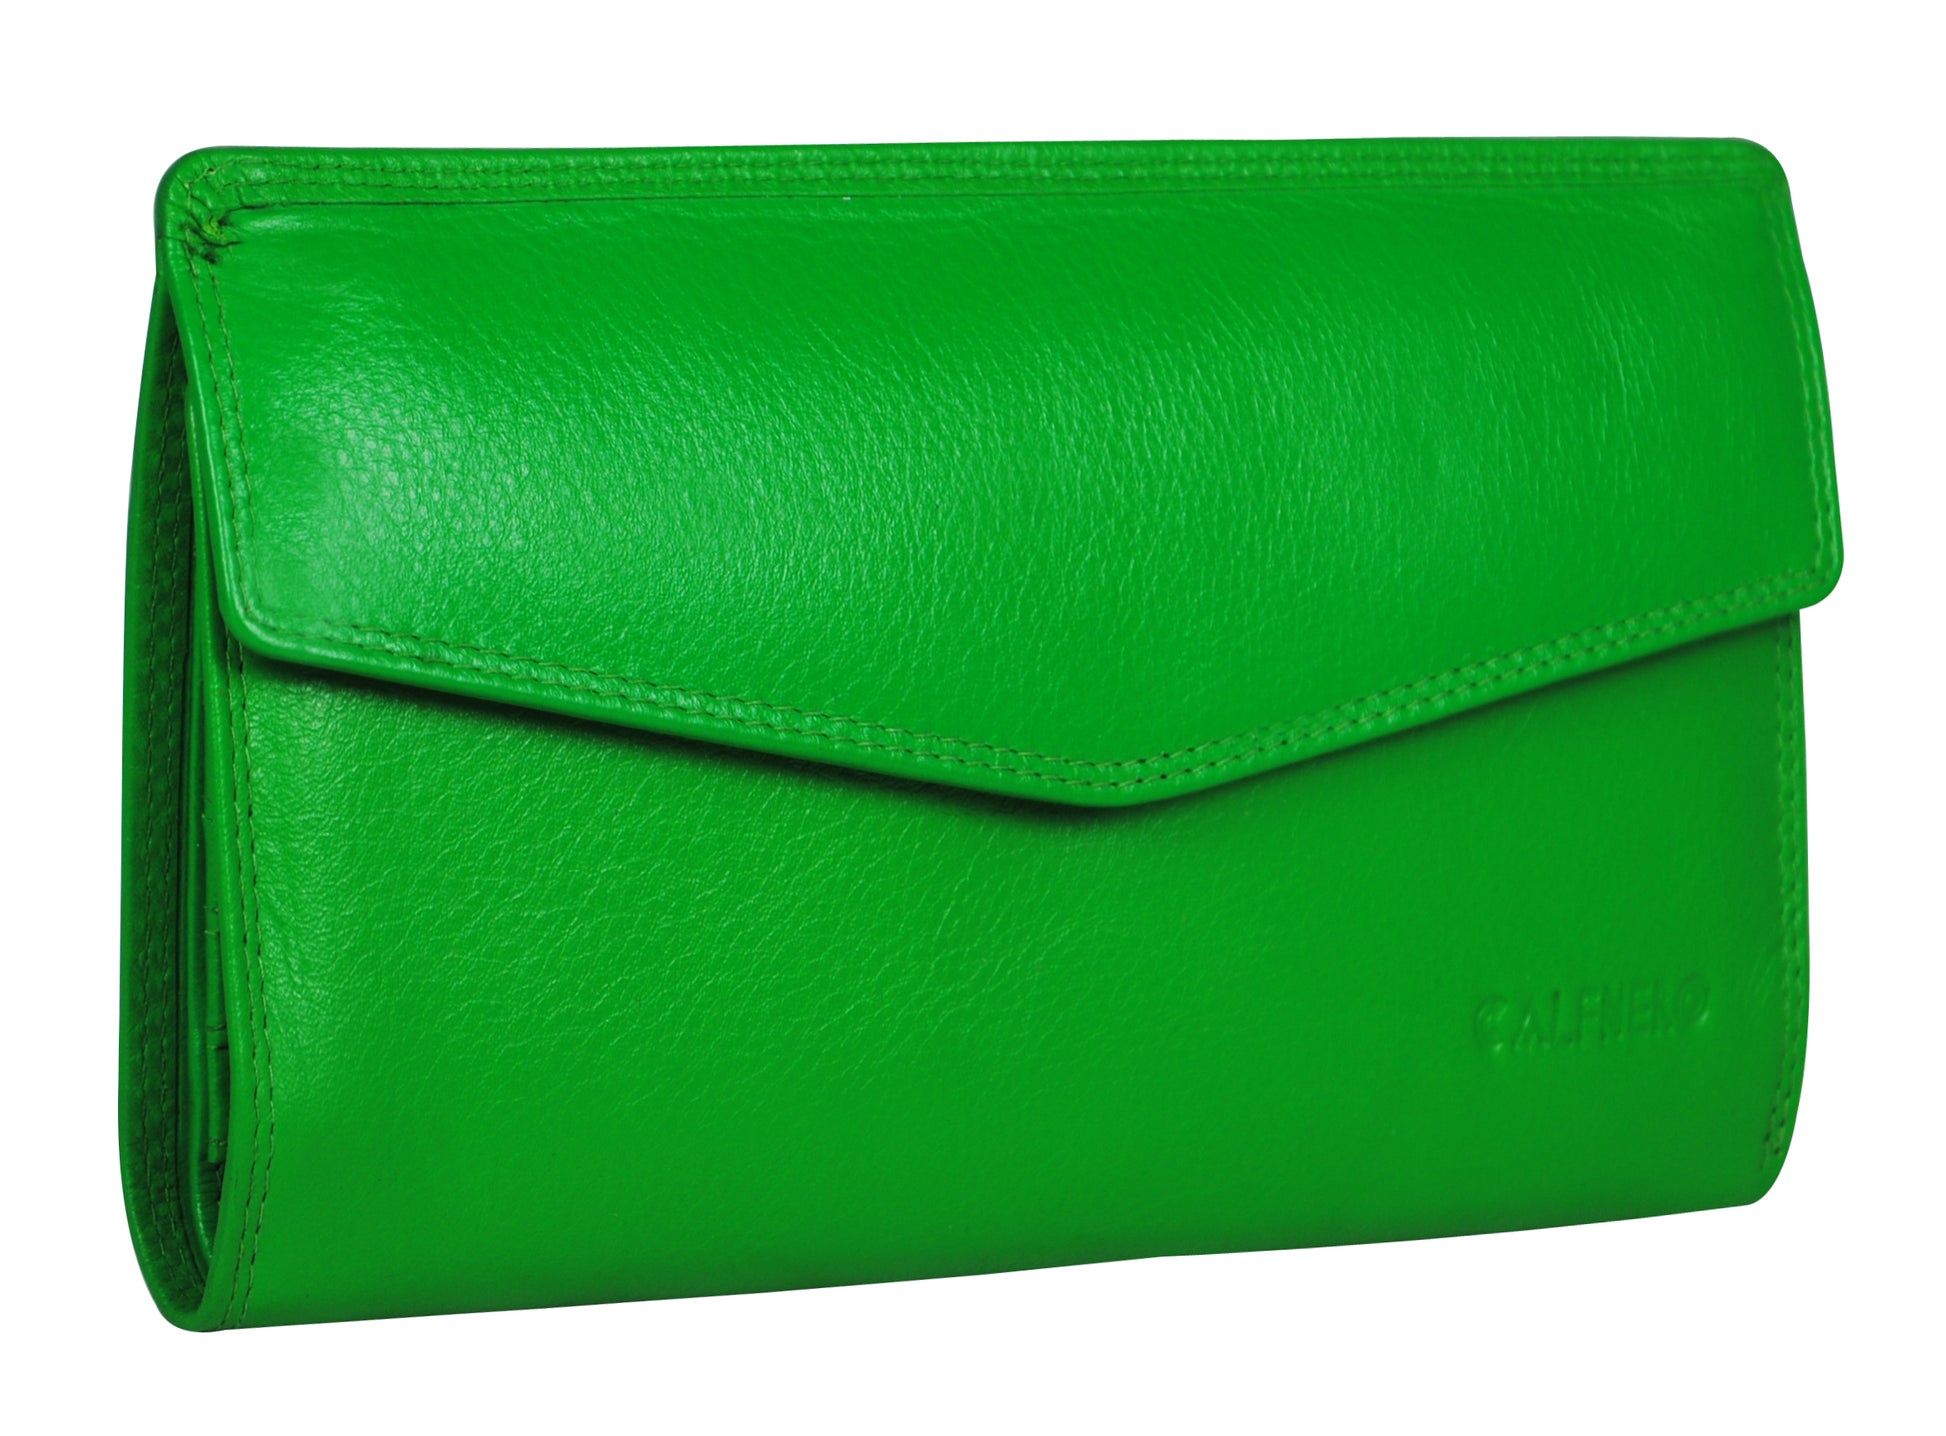 Women's Wallet - Green